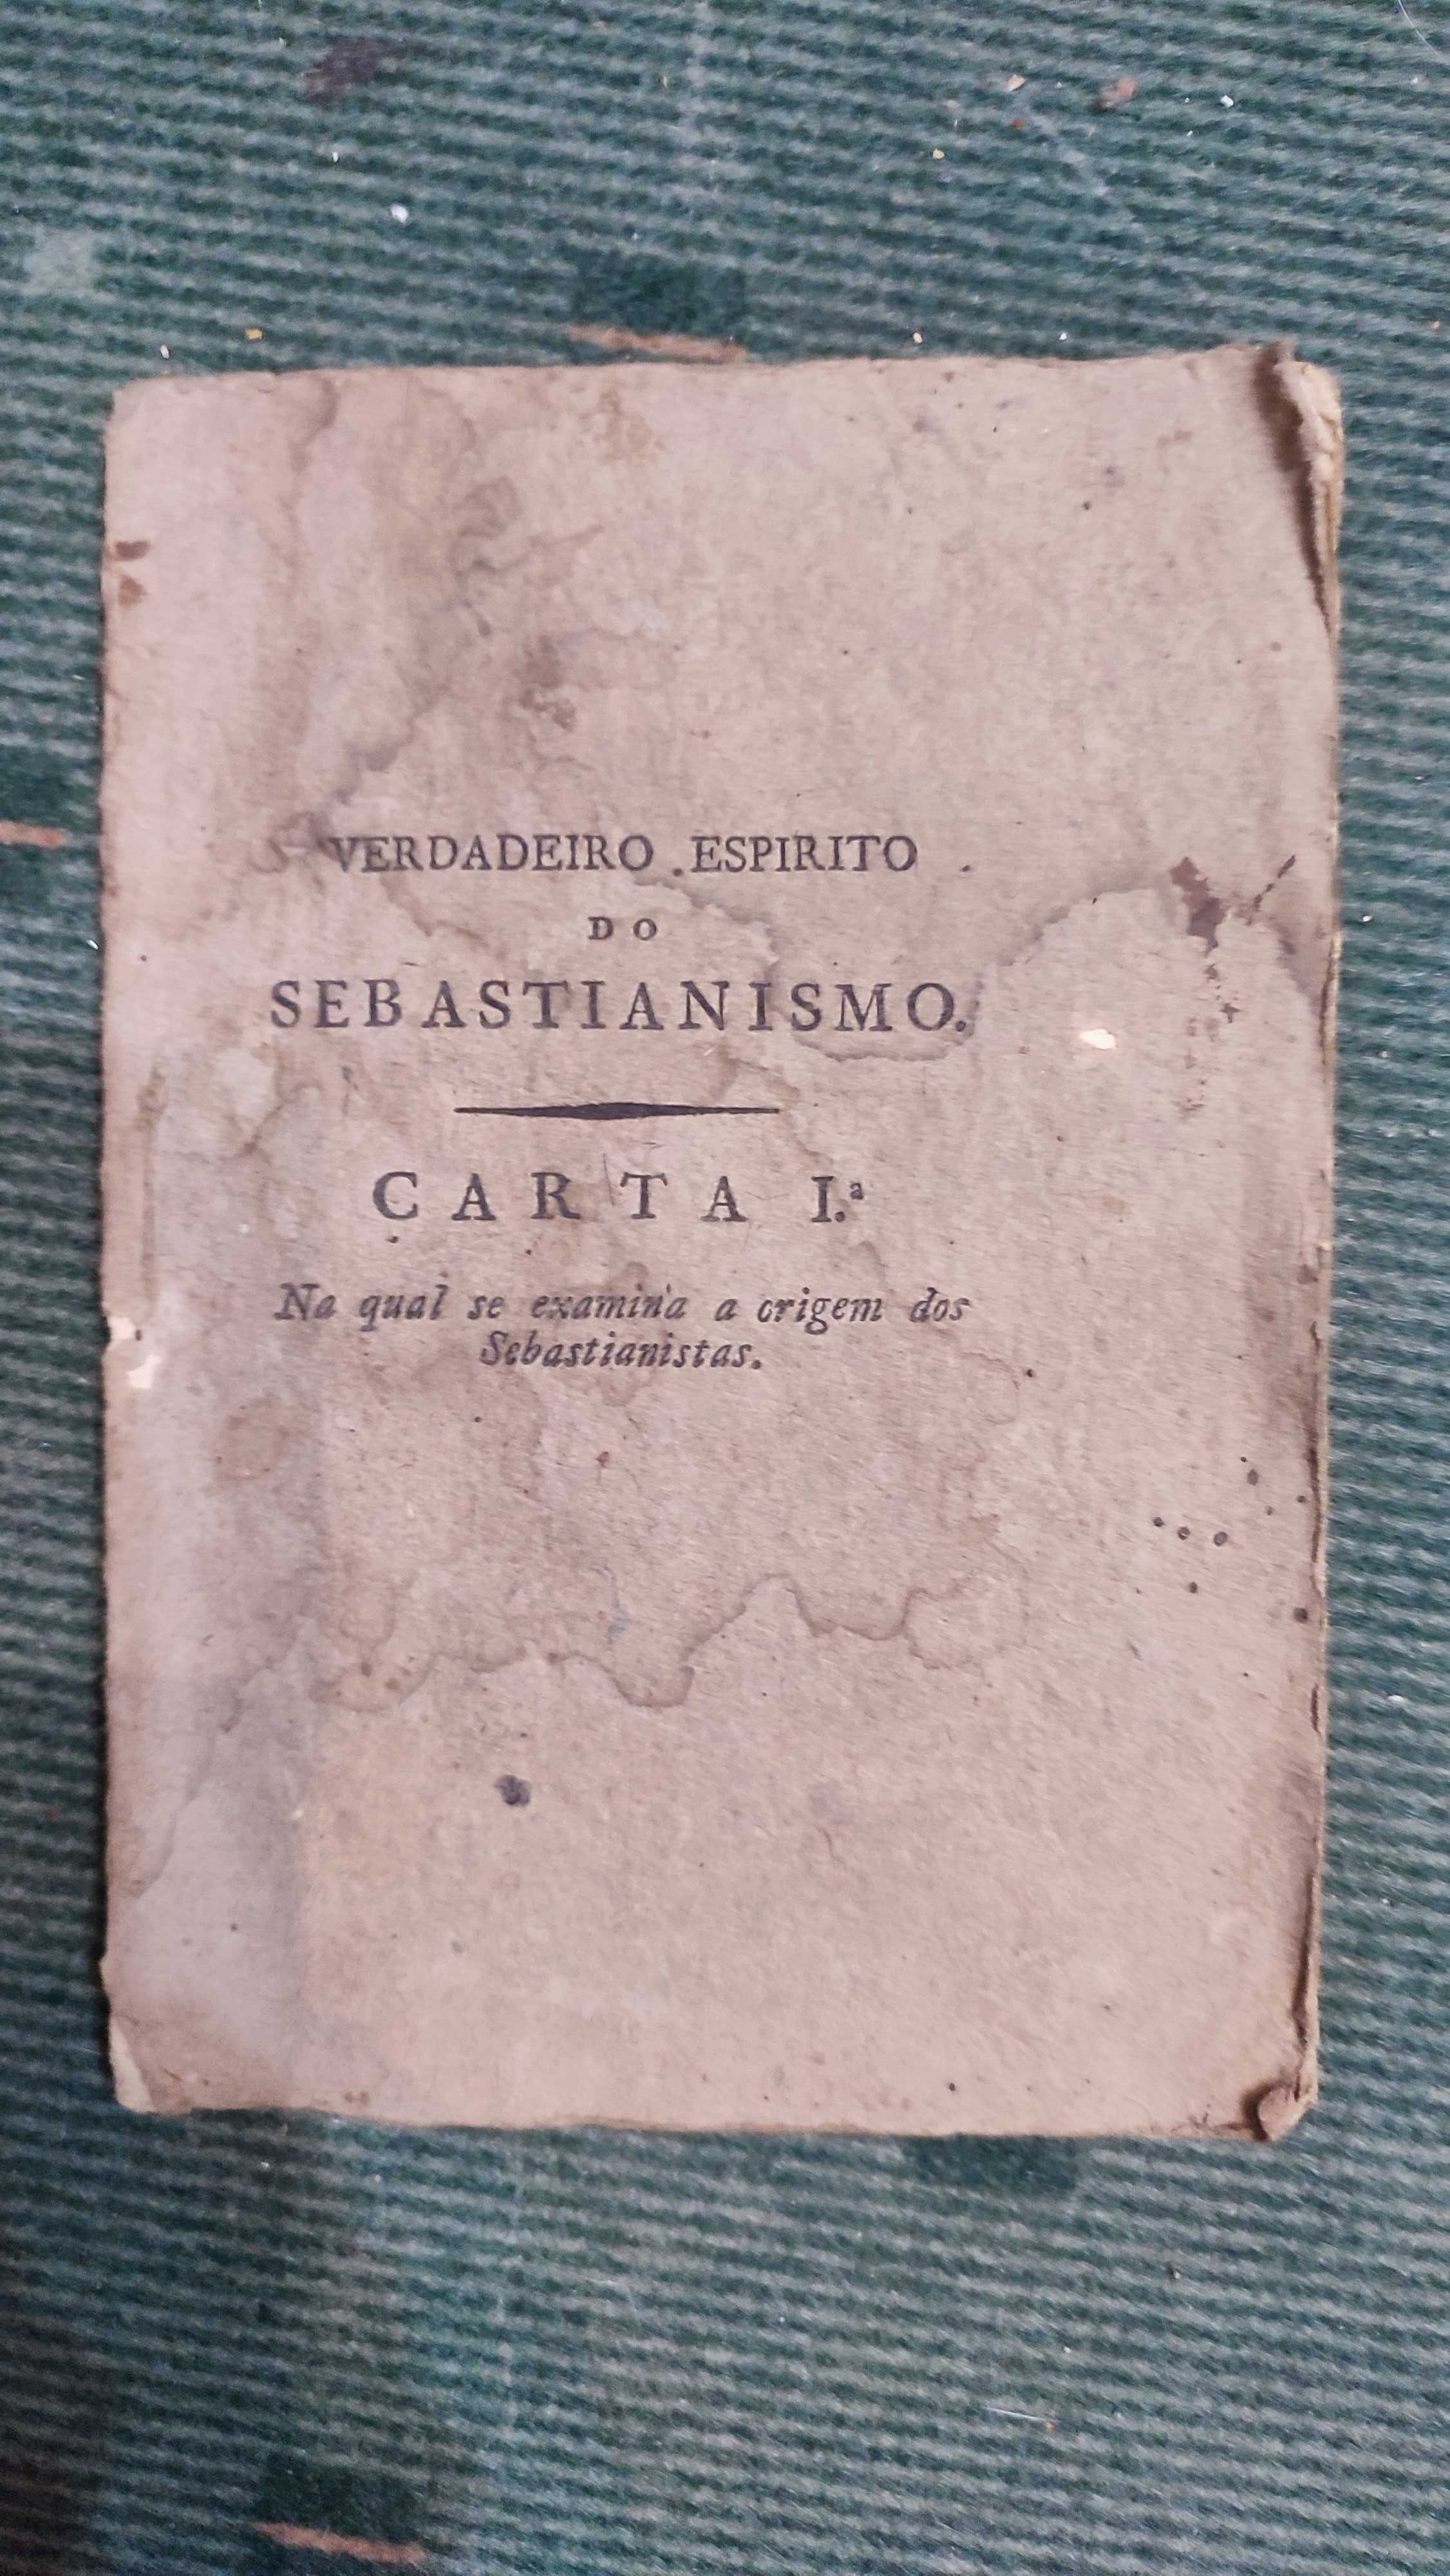 Cartas sobre o verdadeiro espirito do Sebastianismo - 1810